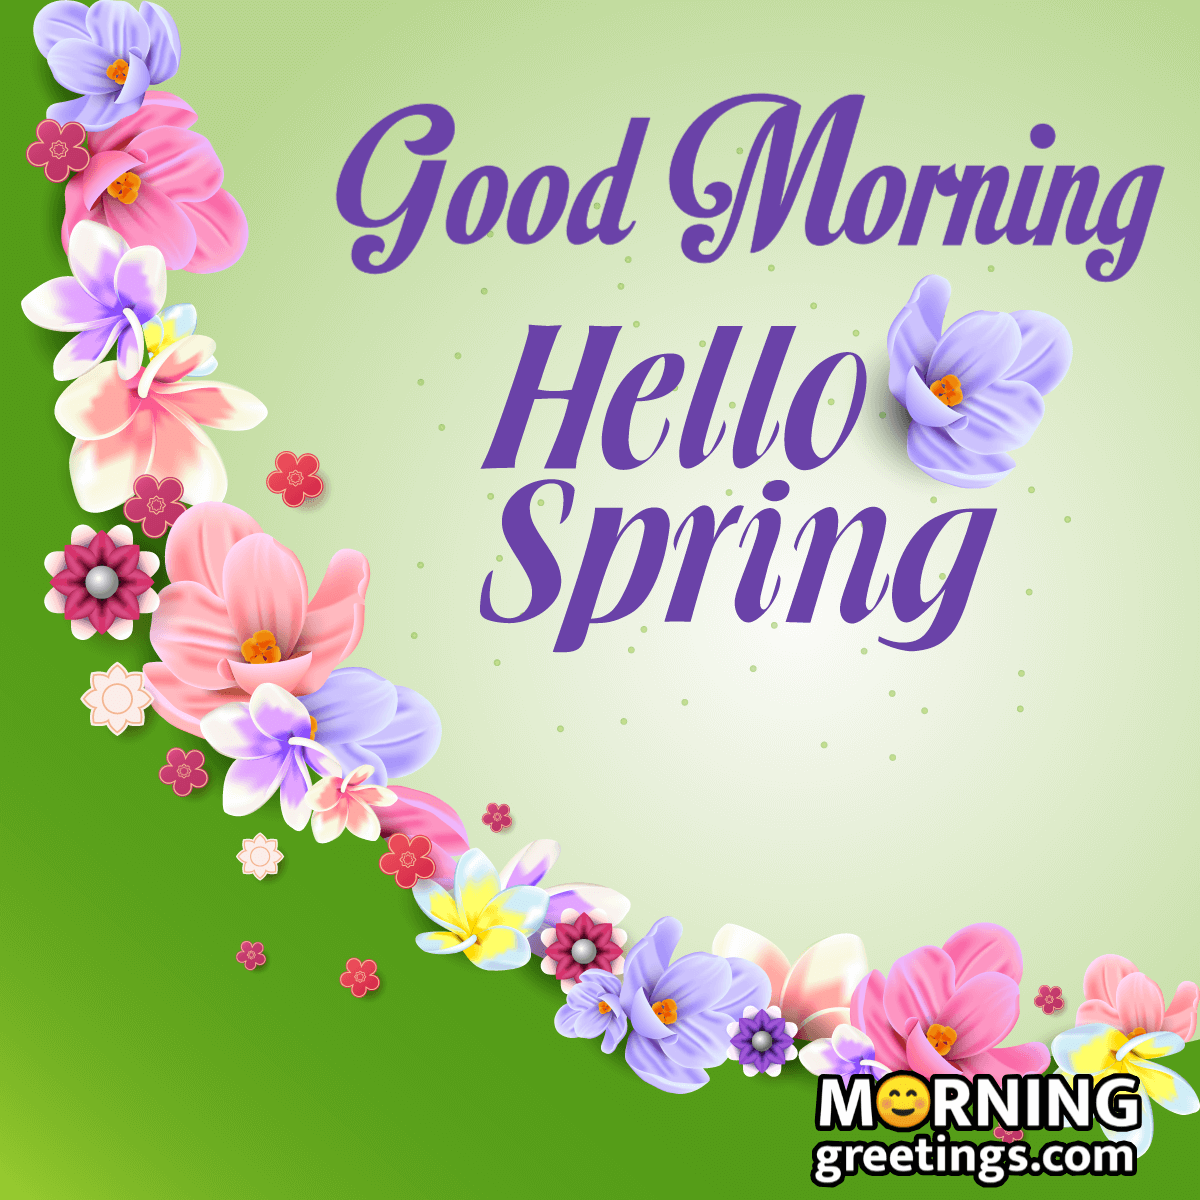 Good Morning Hello Spring